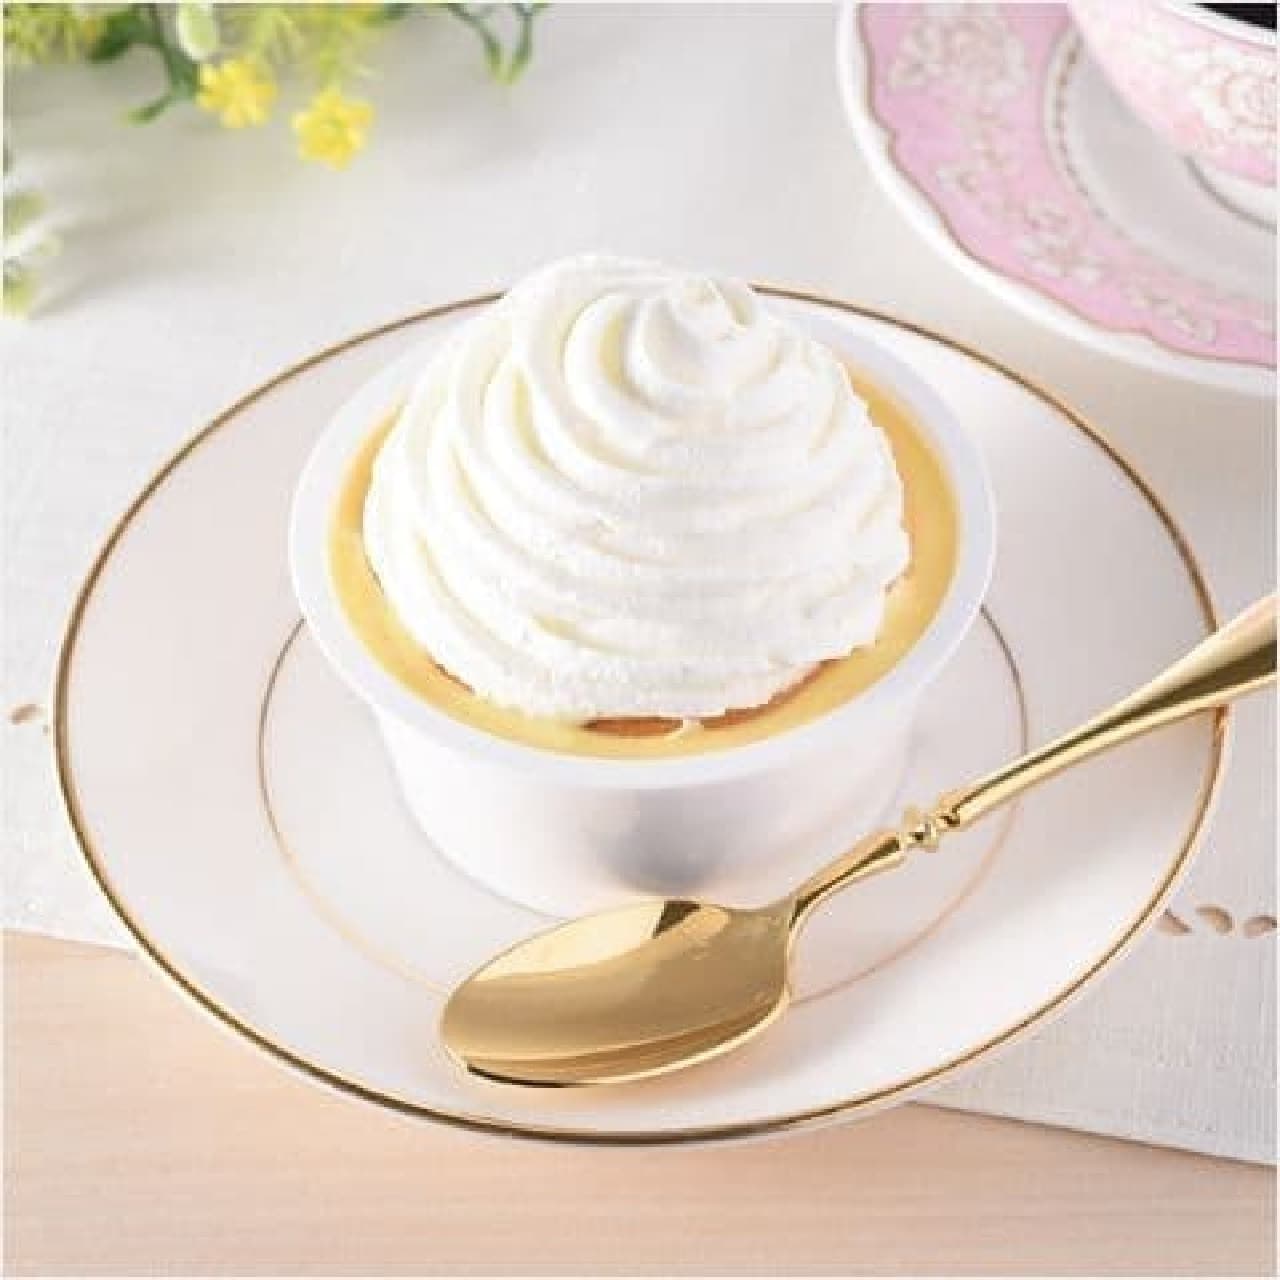 FamilyMart "Cream Hoobaru Cheesecake"